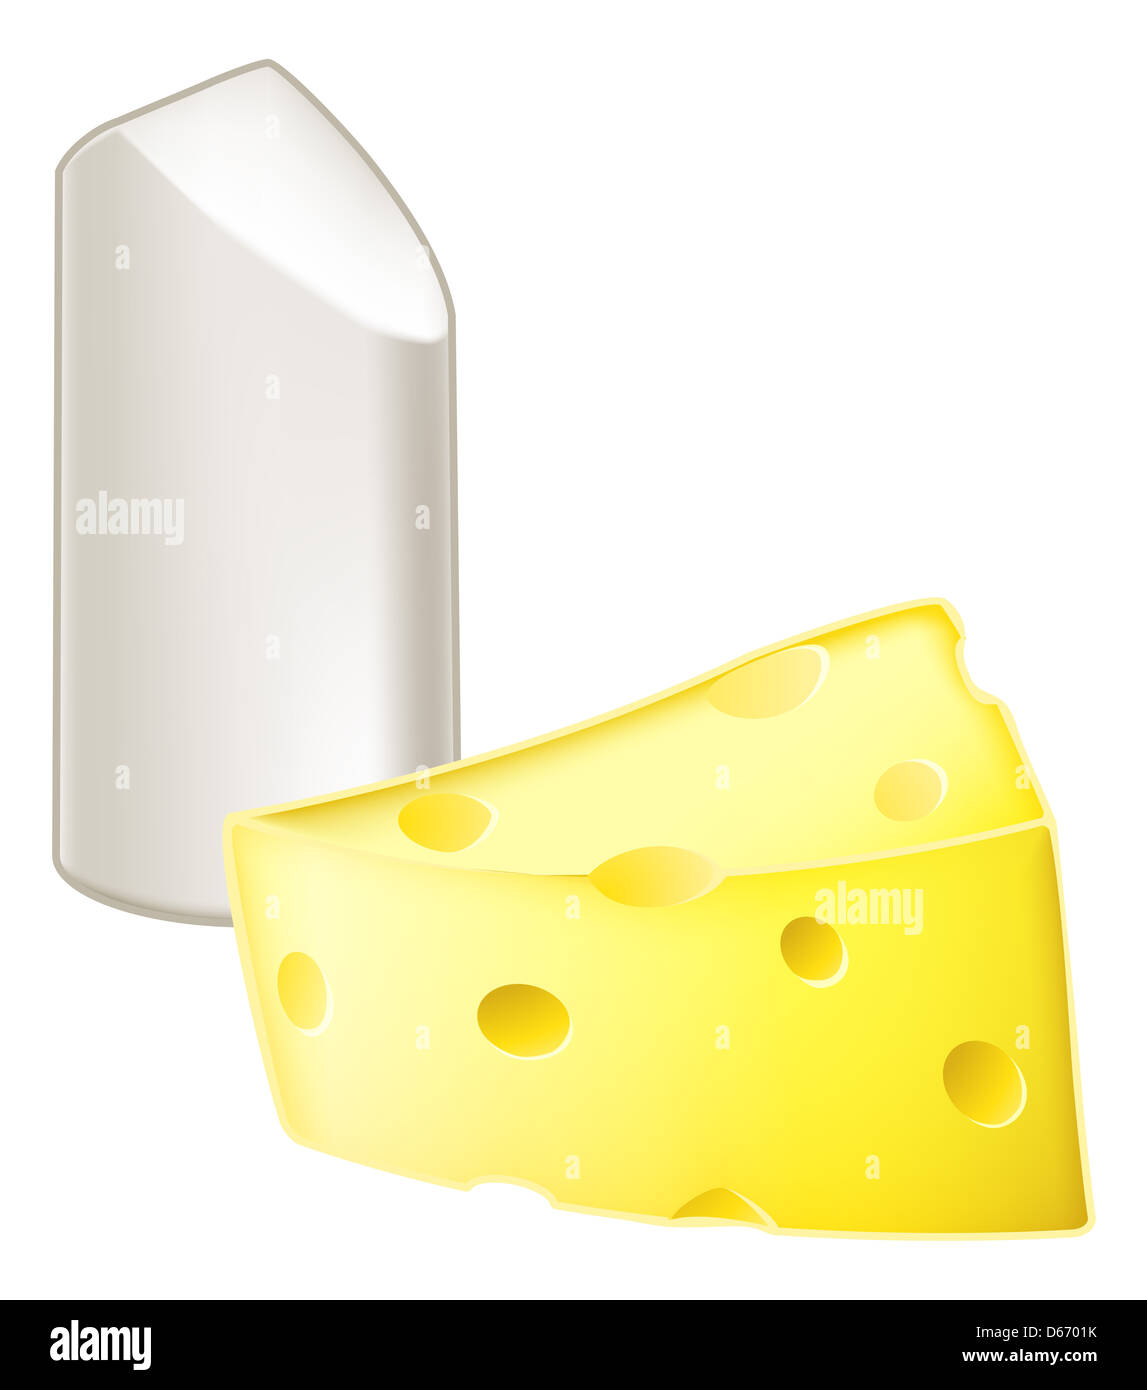 Illustrazione di stick di gesso e pezzo di formaggio, la metafora di gesso e formaggio, significato molto diverso. Foto Stock